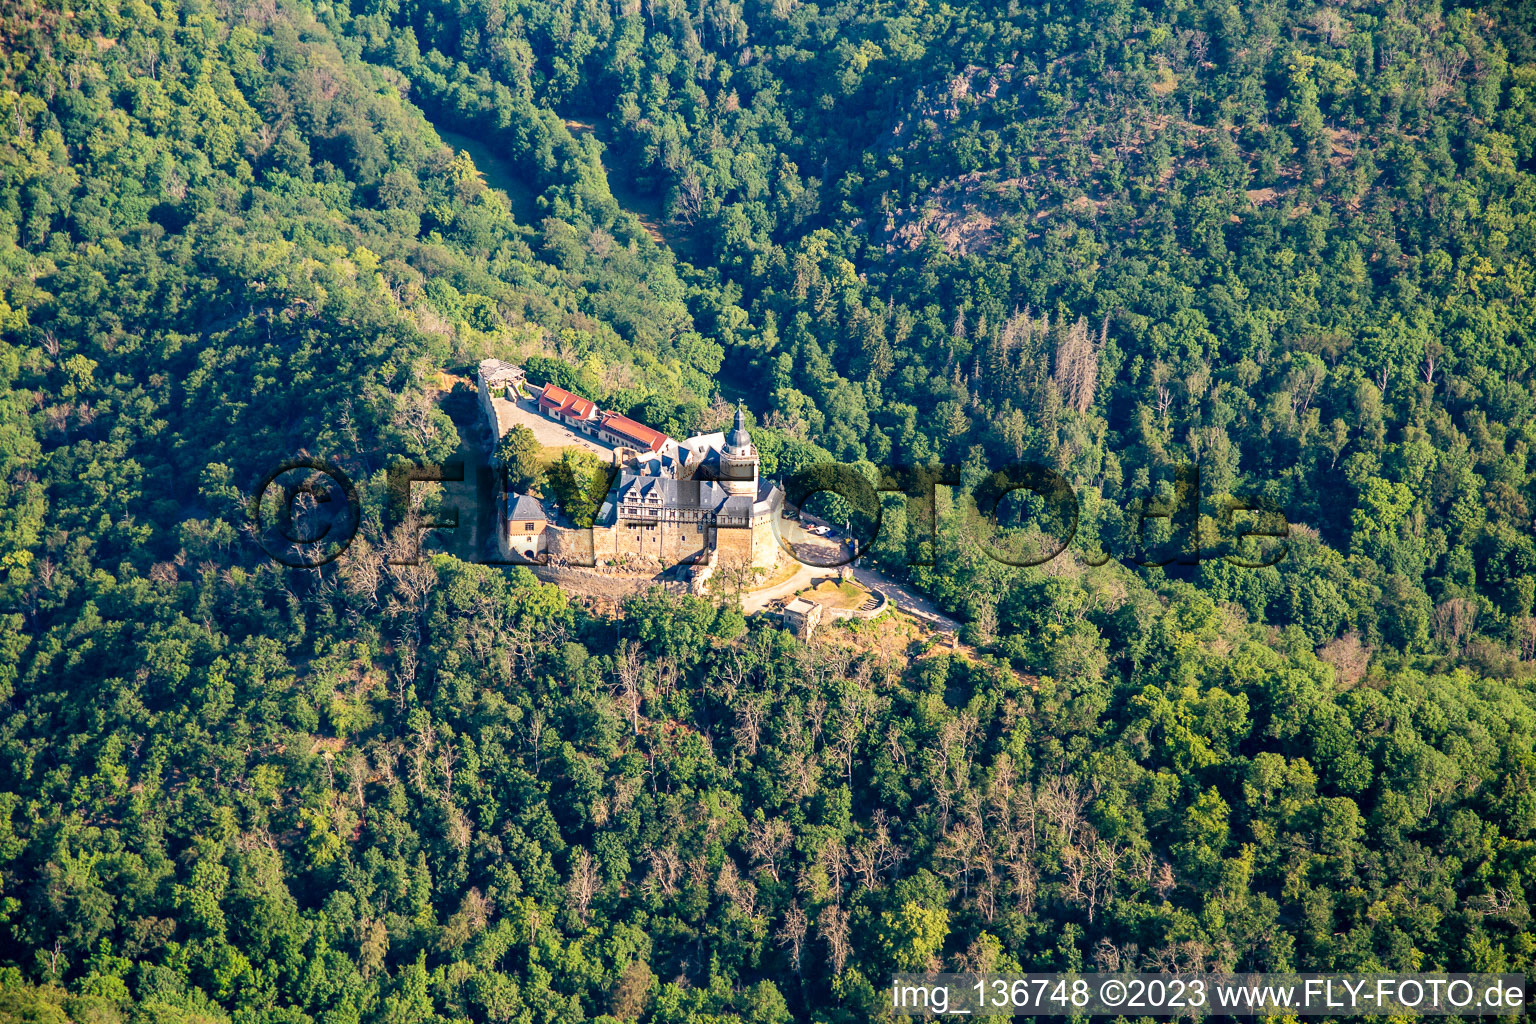 Photographie aérienne de Château Falkenstein (Résine) à le quartier Pansfelde in Falkenstein dans le département Saxe-Anhalt, Allemagne